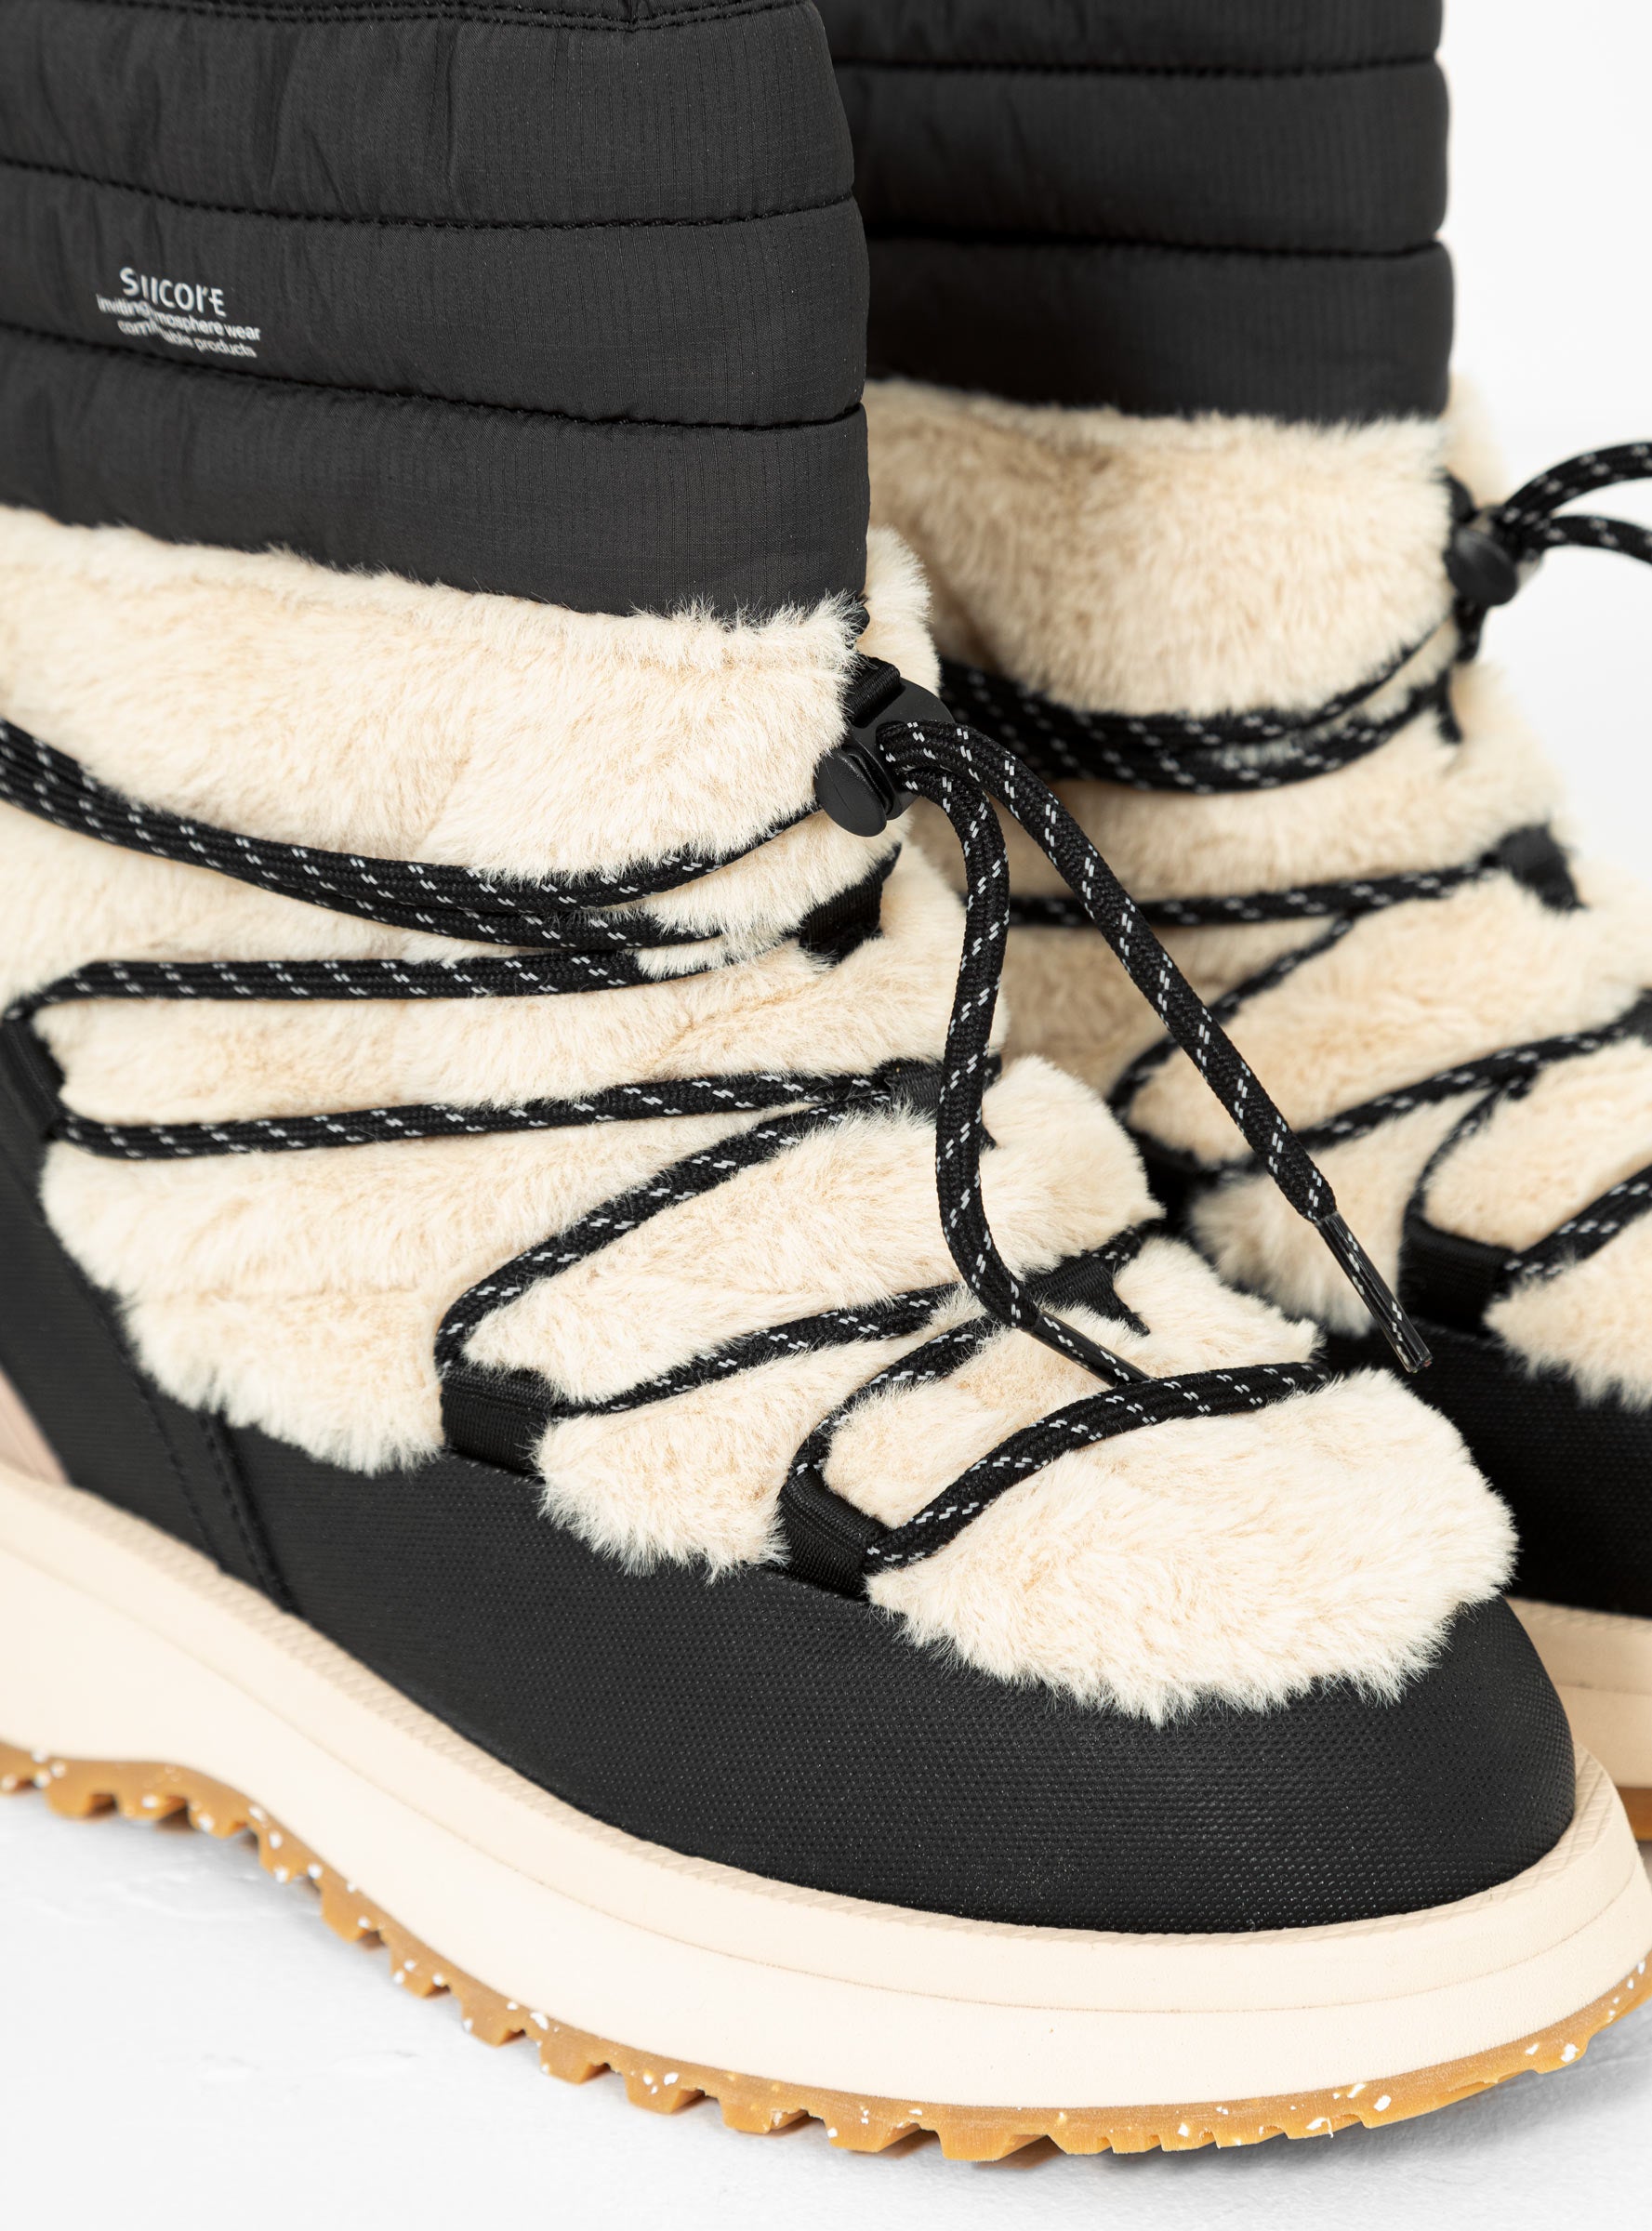 Bower-ab Hi Fur Boots Black & Beige by Suicoke | Couverture & The